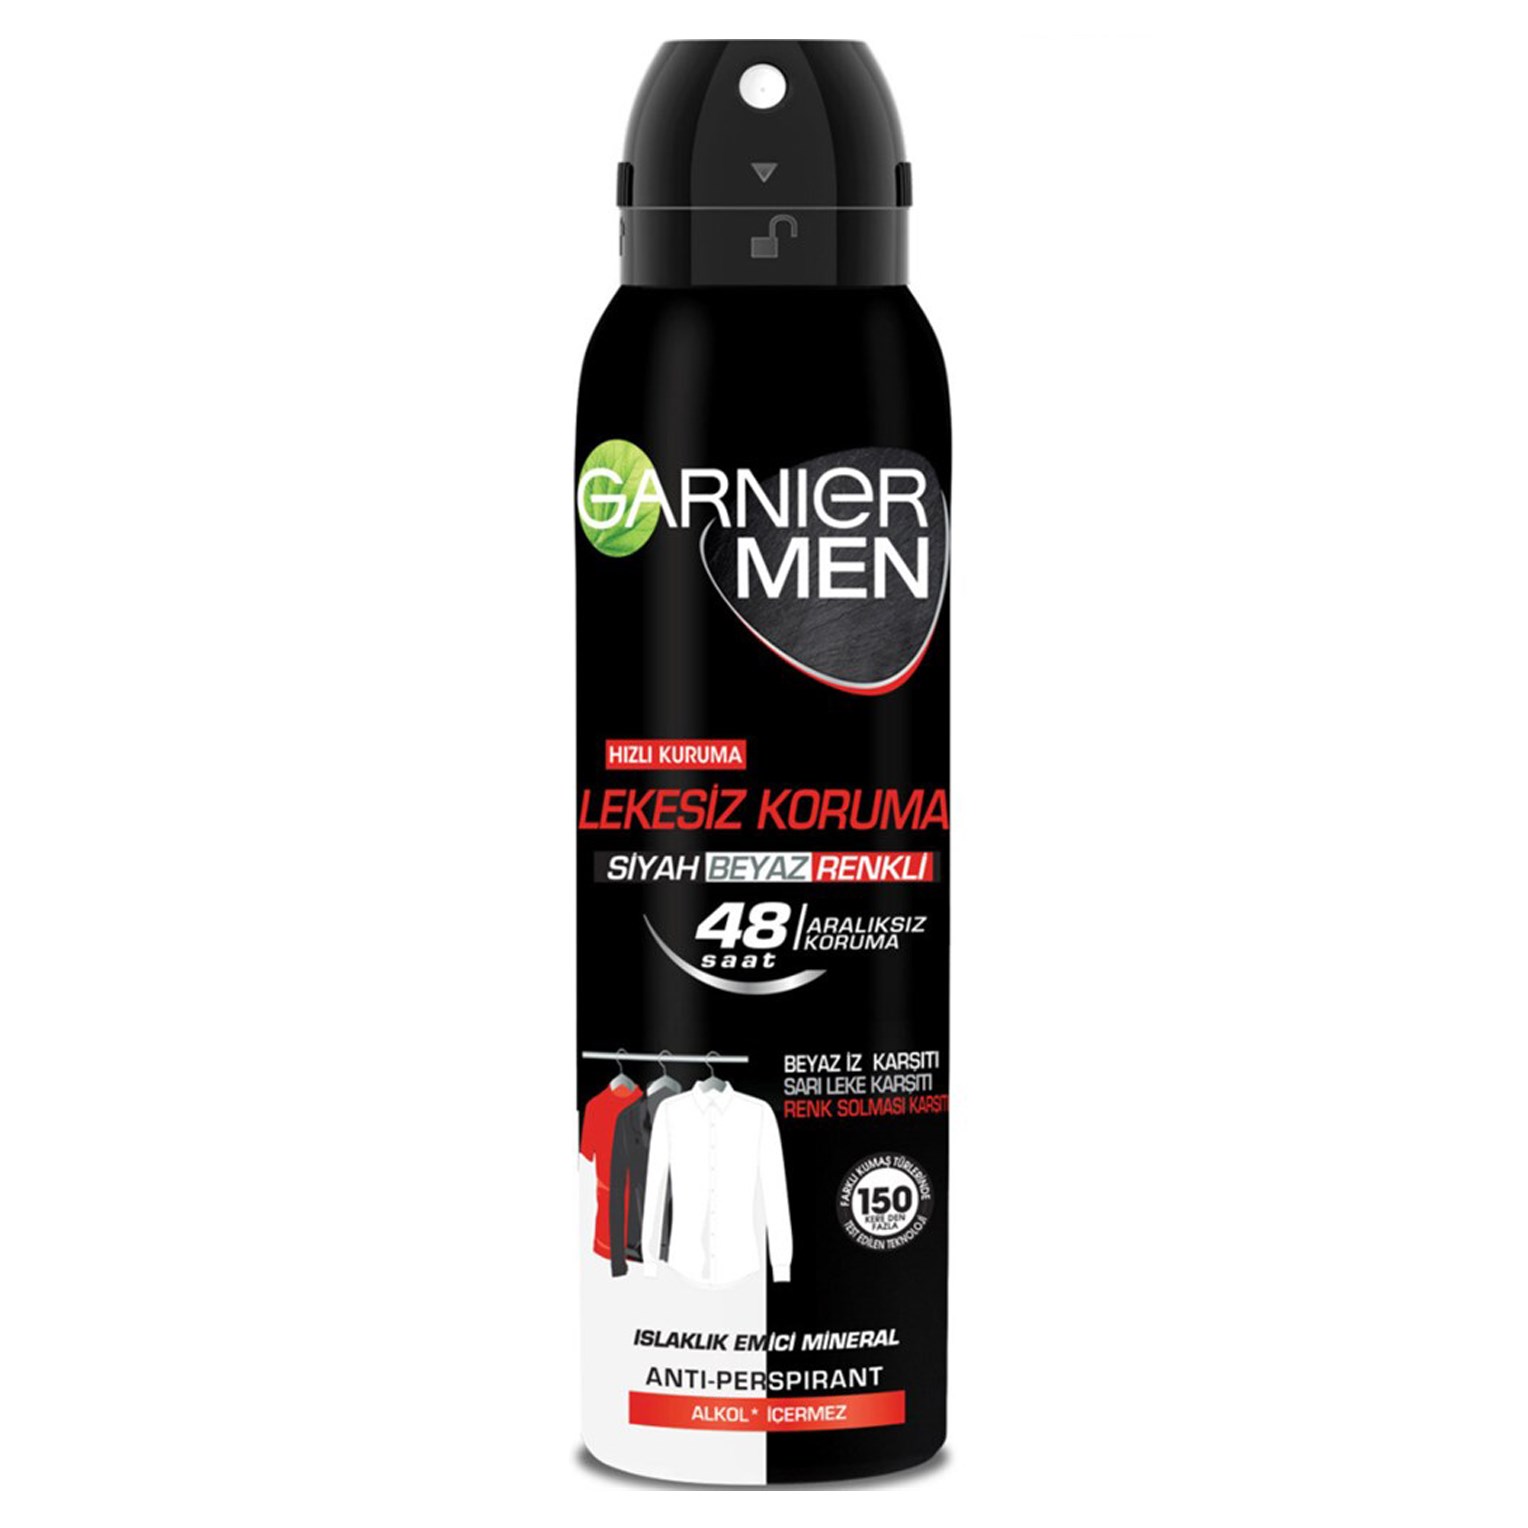 Garnier Mineral Deodorant Men Bwc 150ml